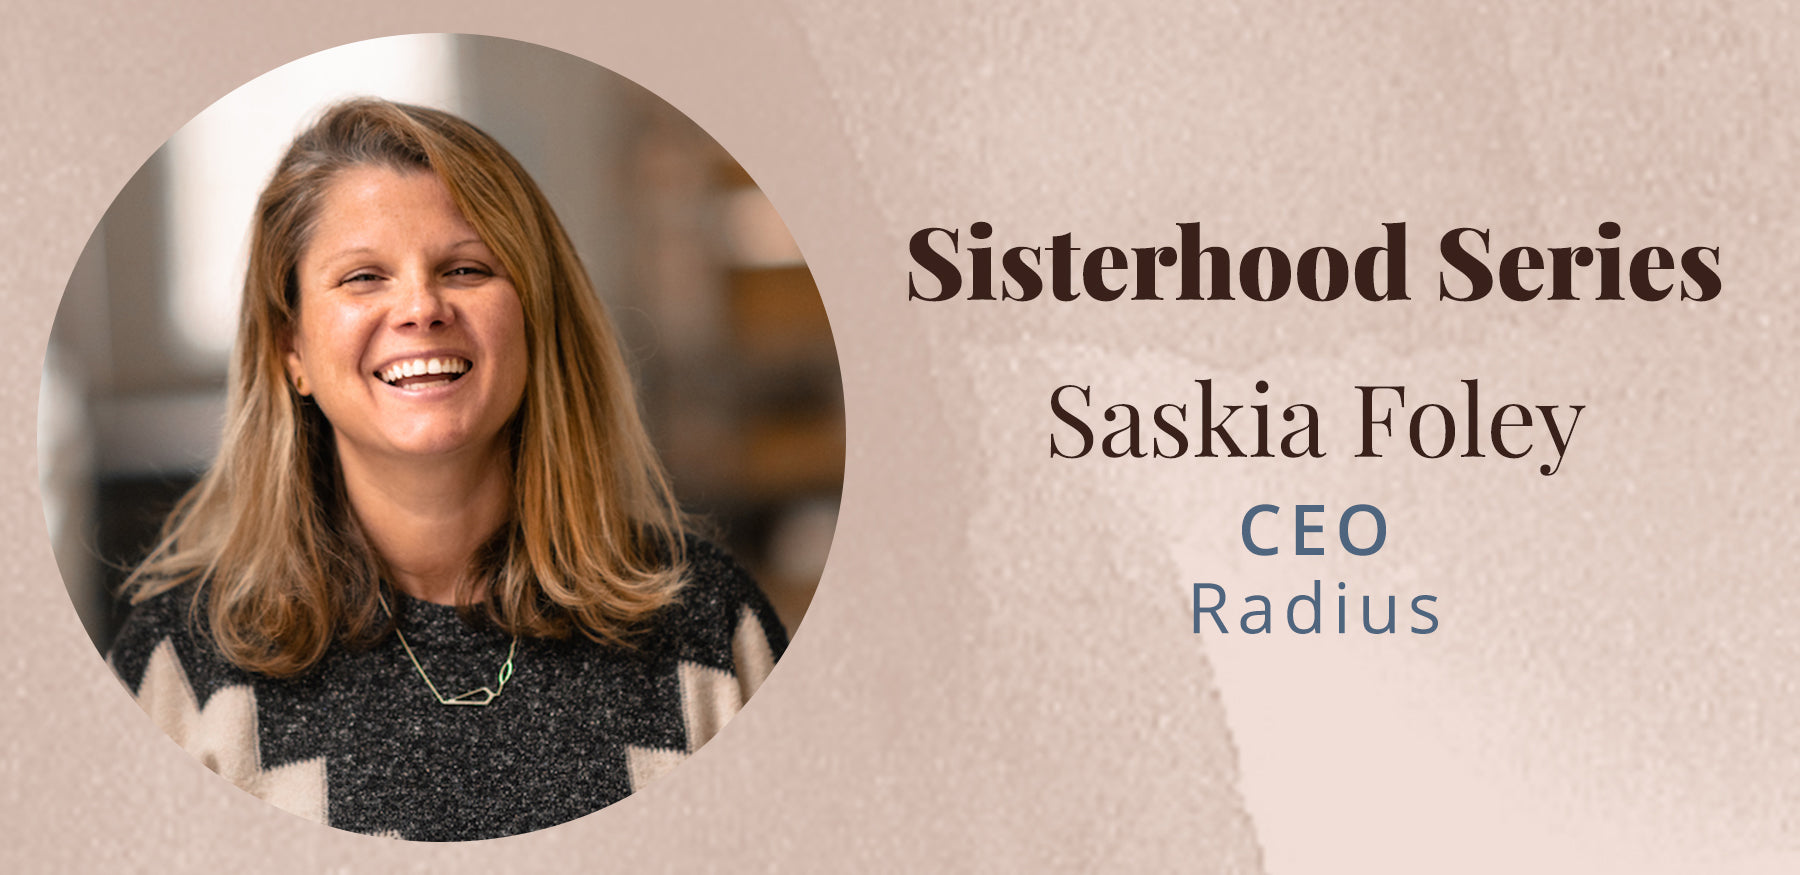 <!--The Sisterhood Series with Saskia Foley-->